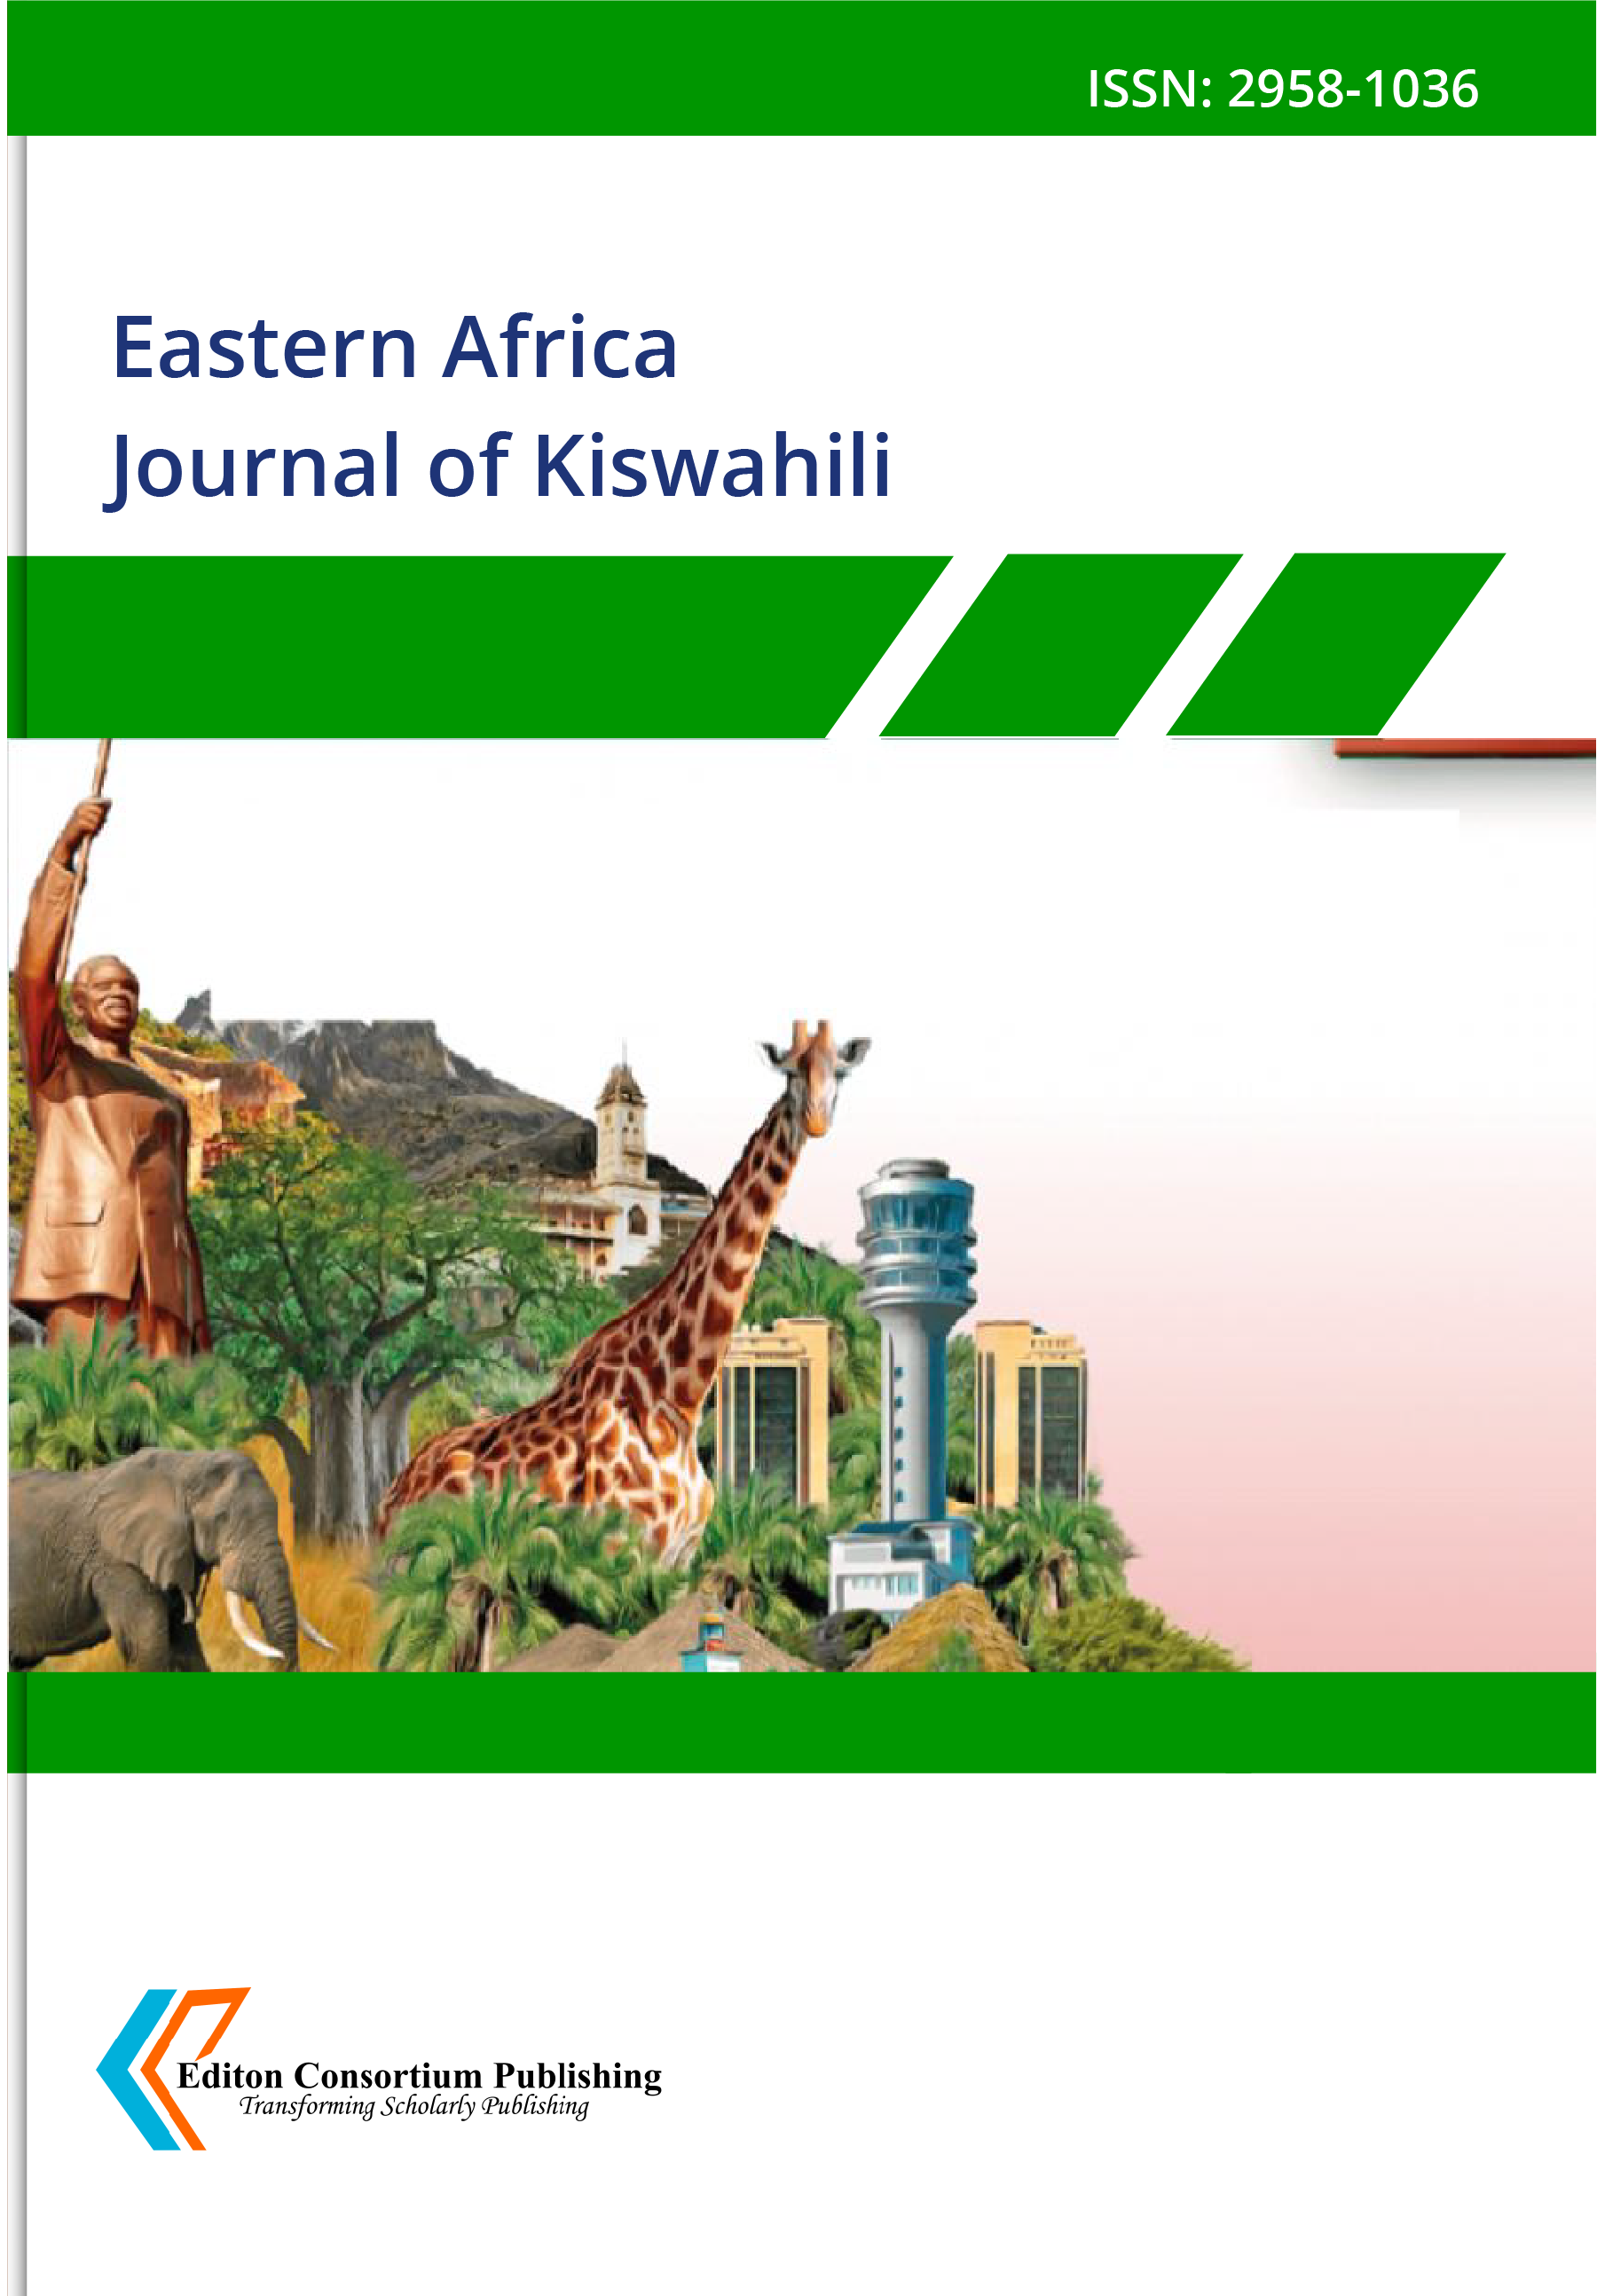  Eastern Africa Journal of Kiswahili